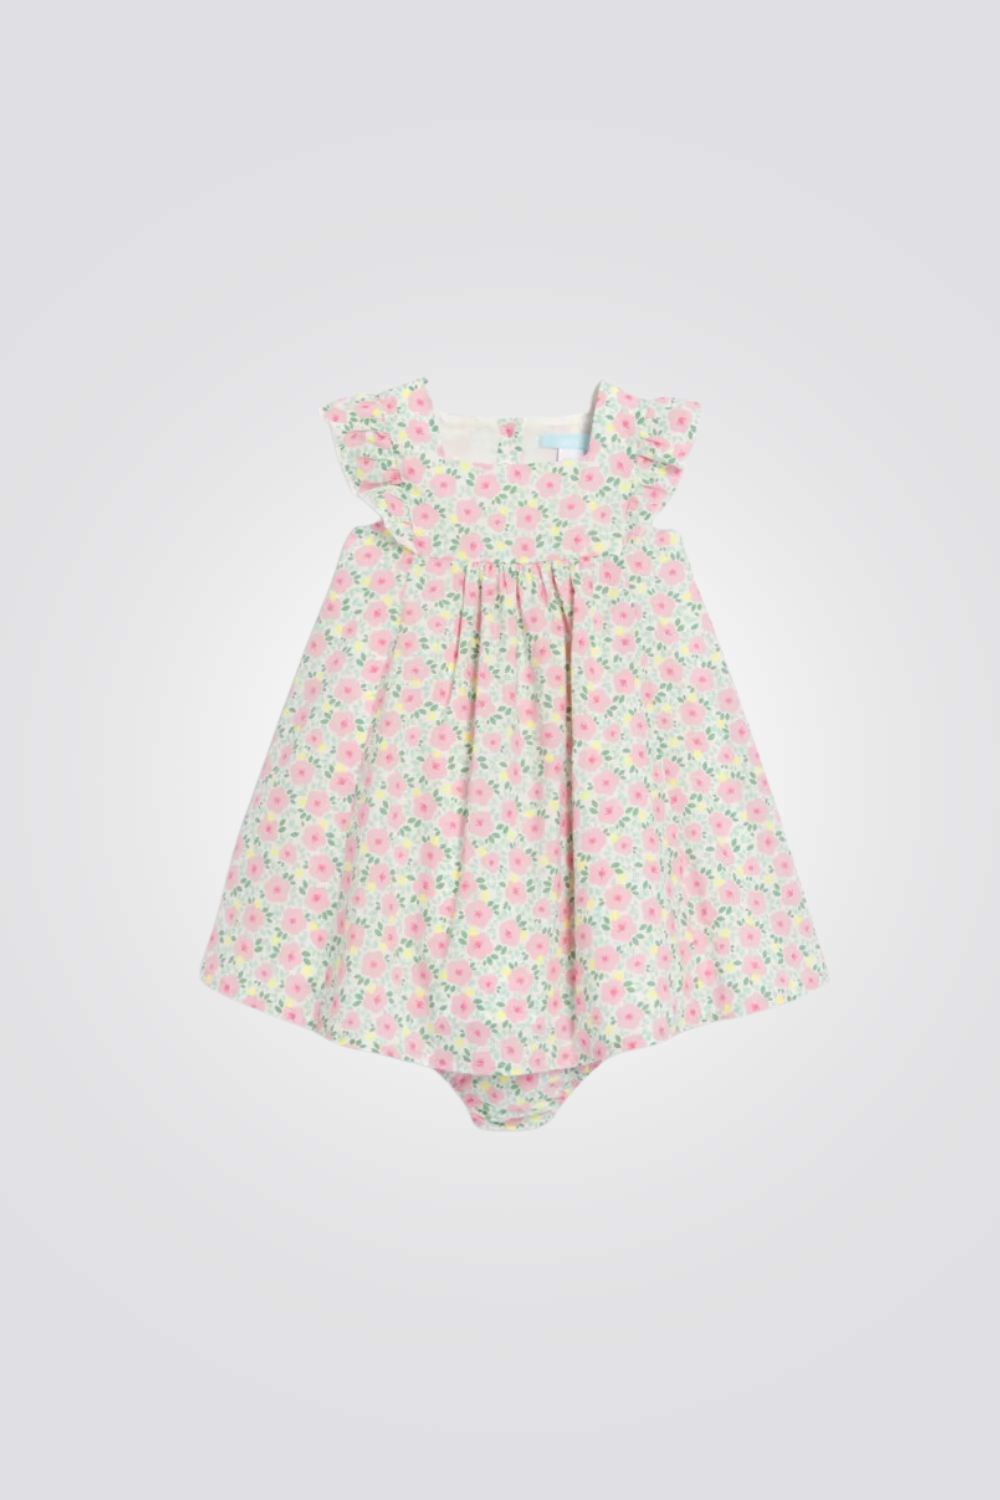 שמלה לתינוקות בהדפס פרחוני